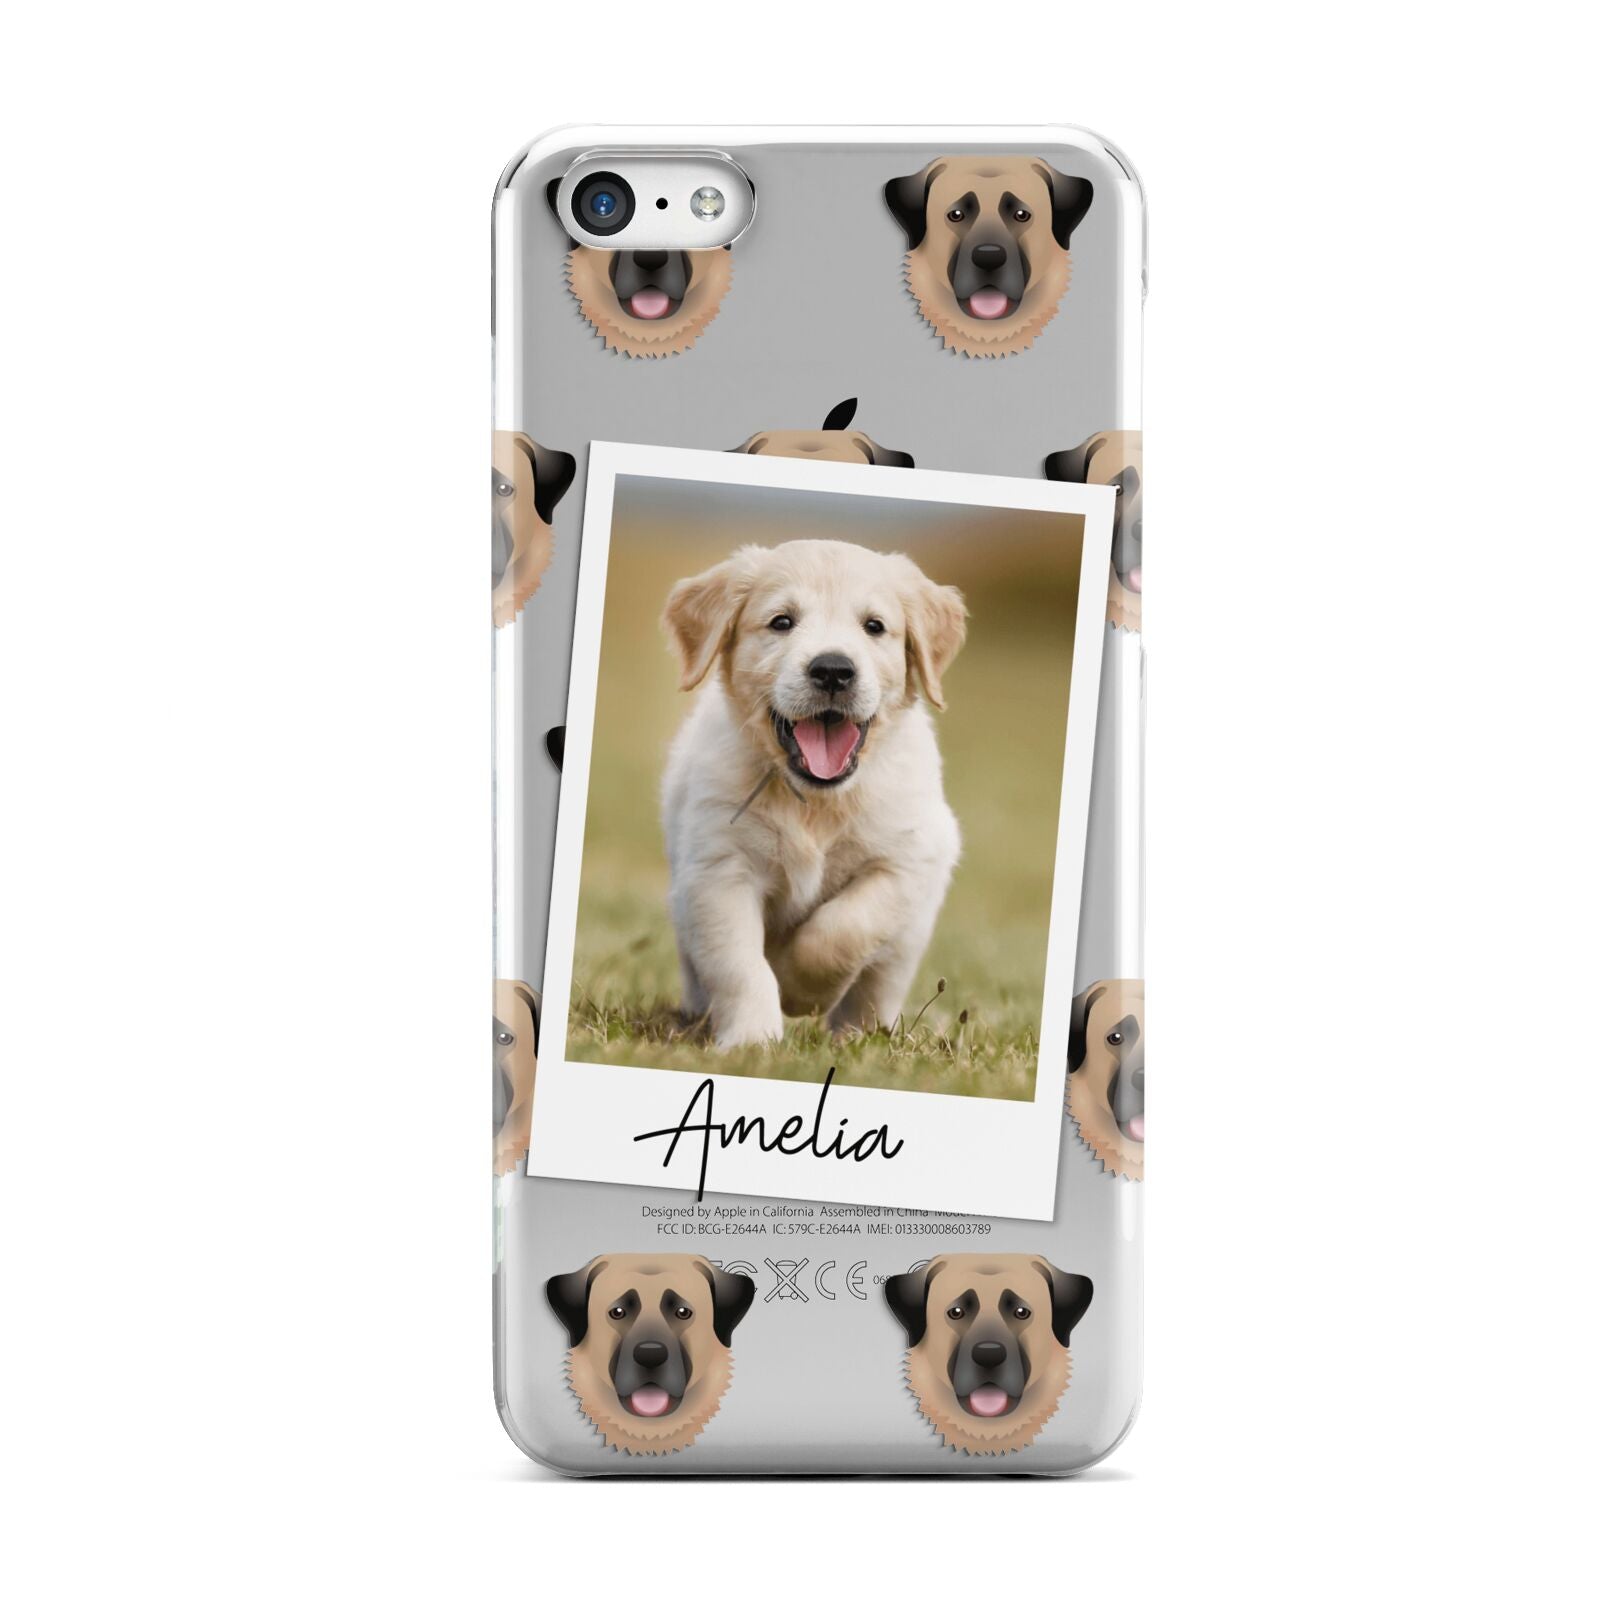 Personalised Dog Photo Apple iPhone 5c Case